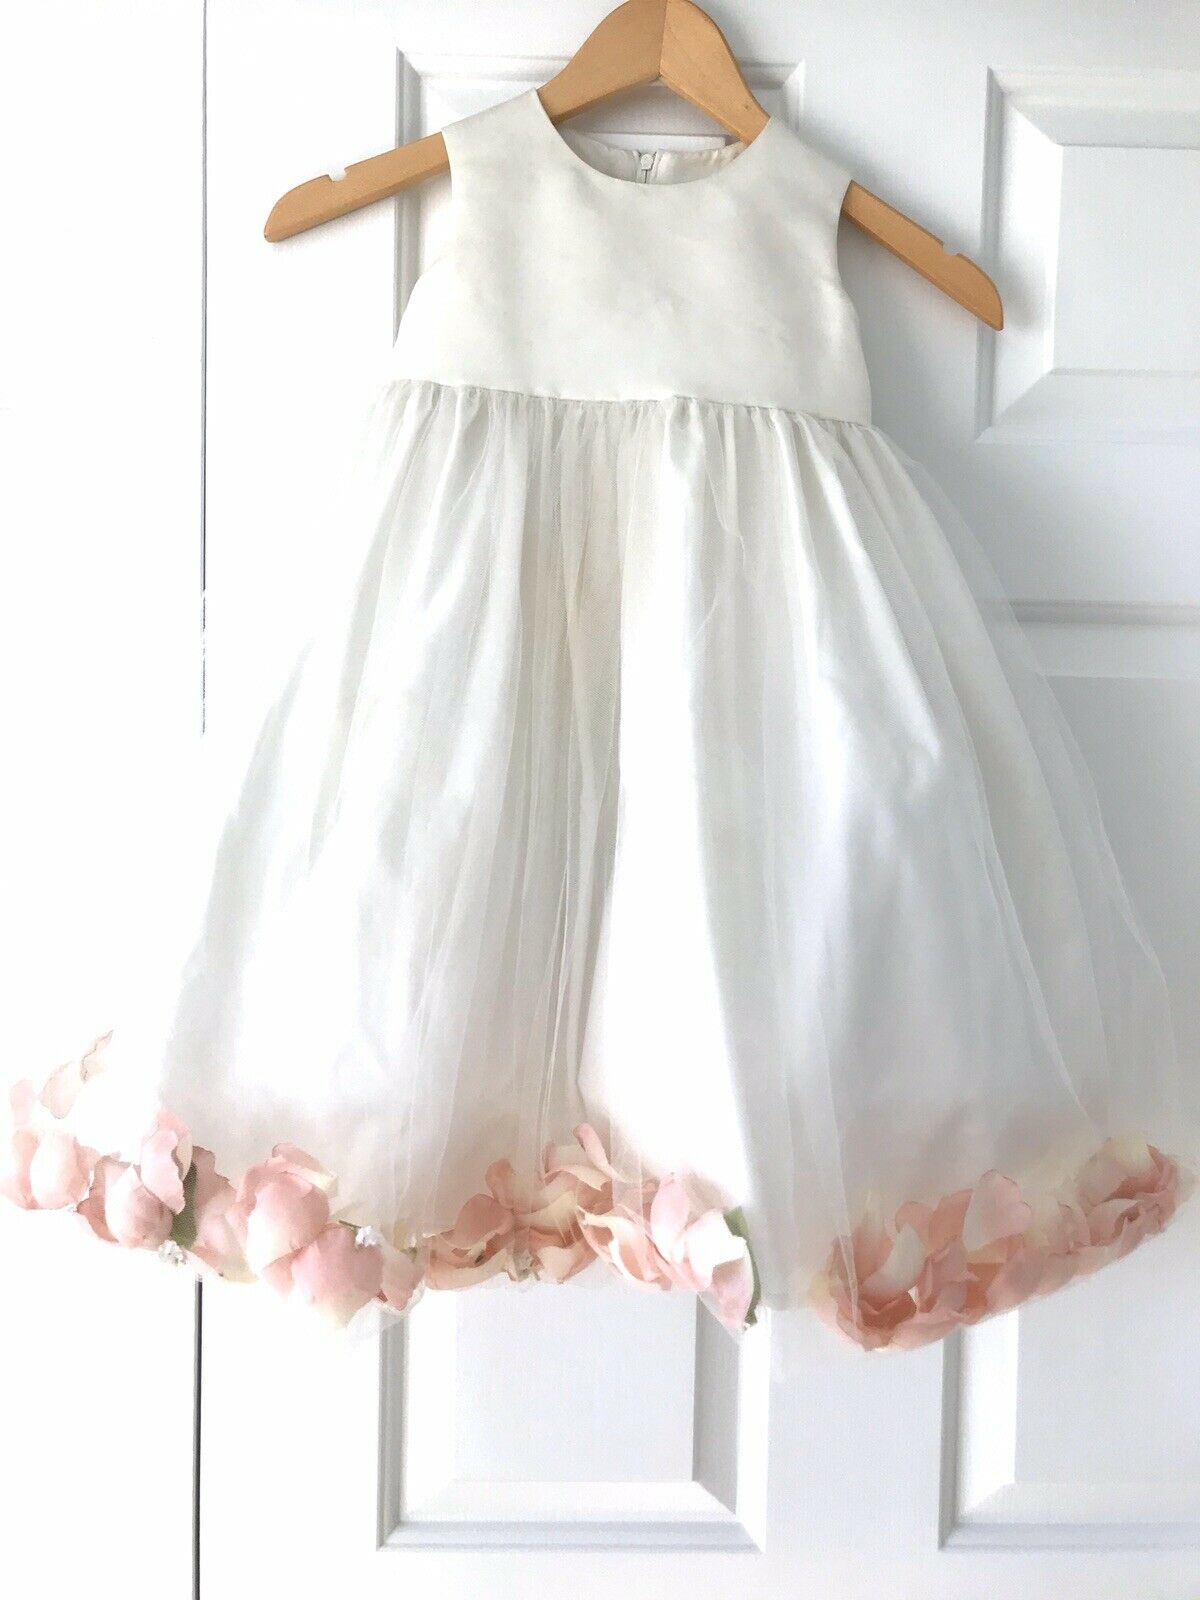 Girls Ivory Tulle Flower Girl Dress Size 4t